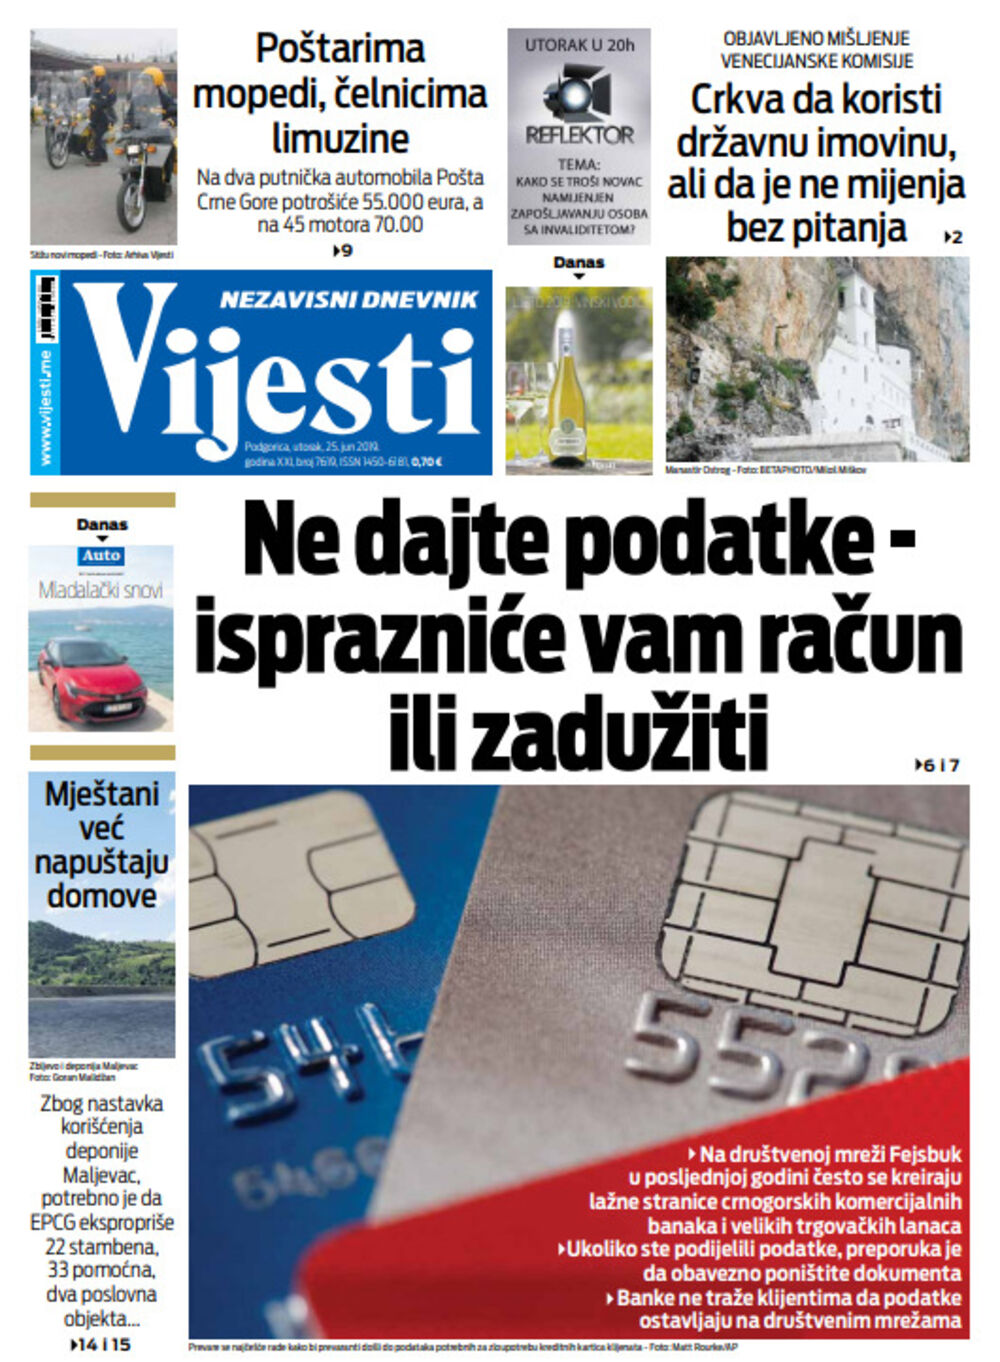 Naslovna strana "Vijesti" za 25. jun, Foto: Vijesti